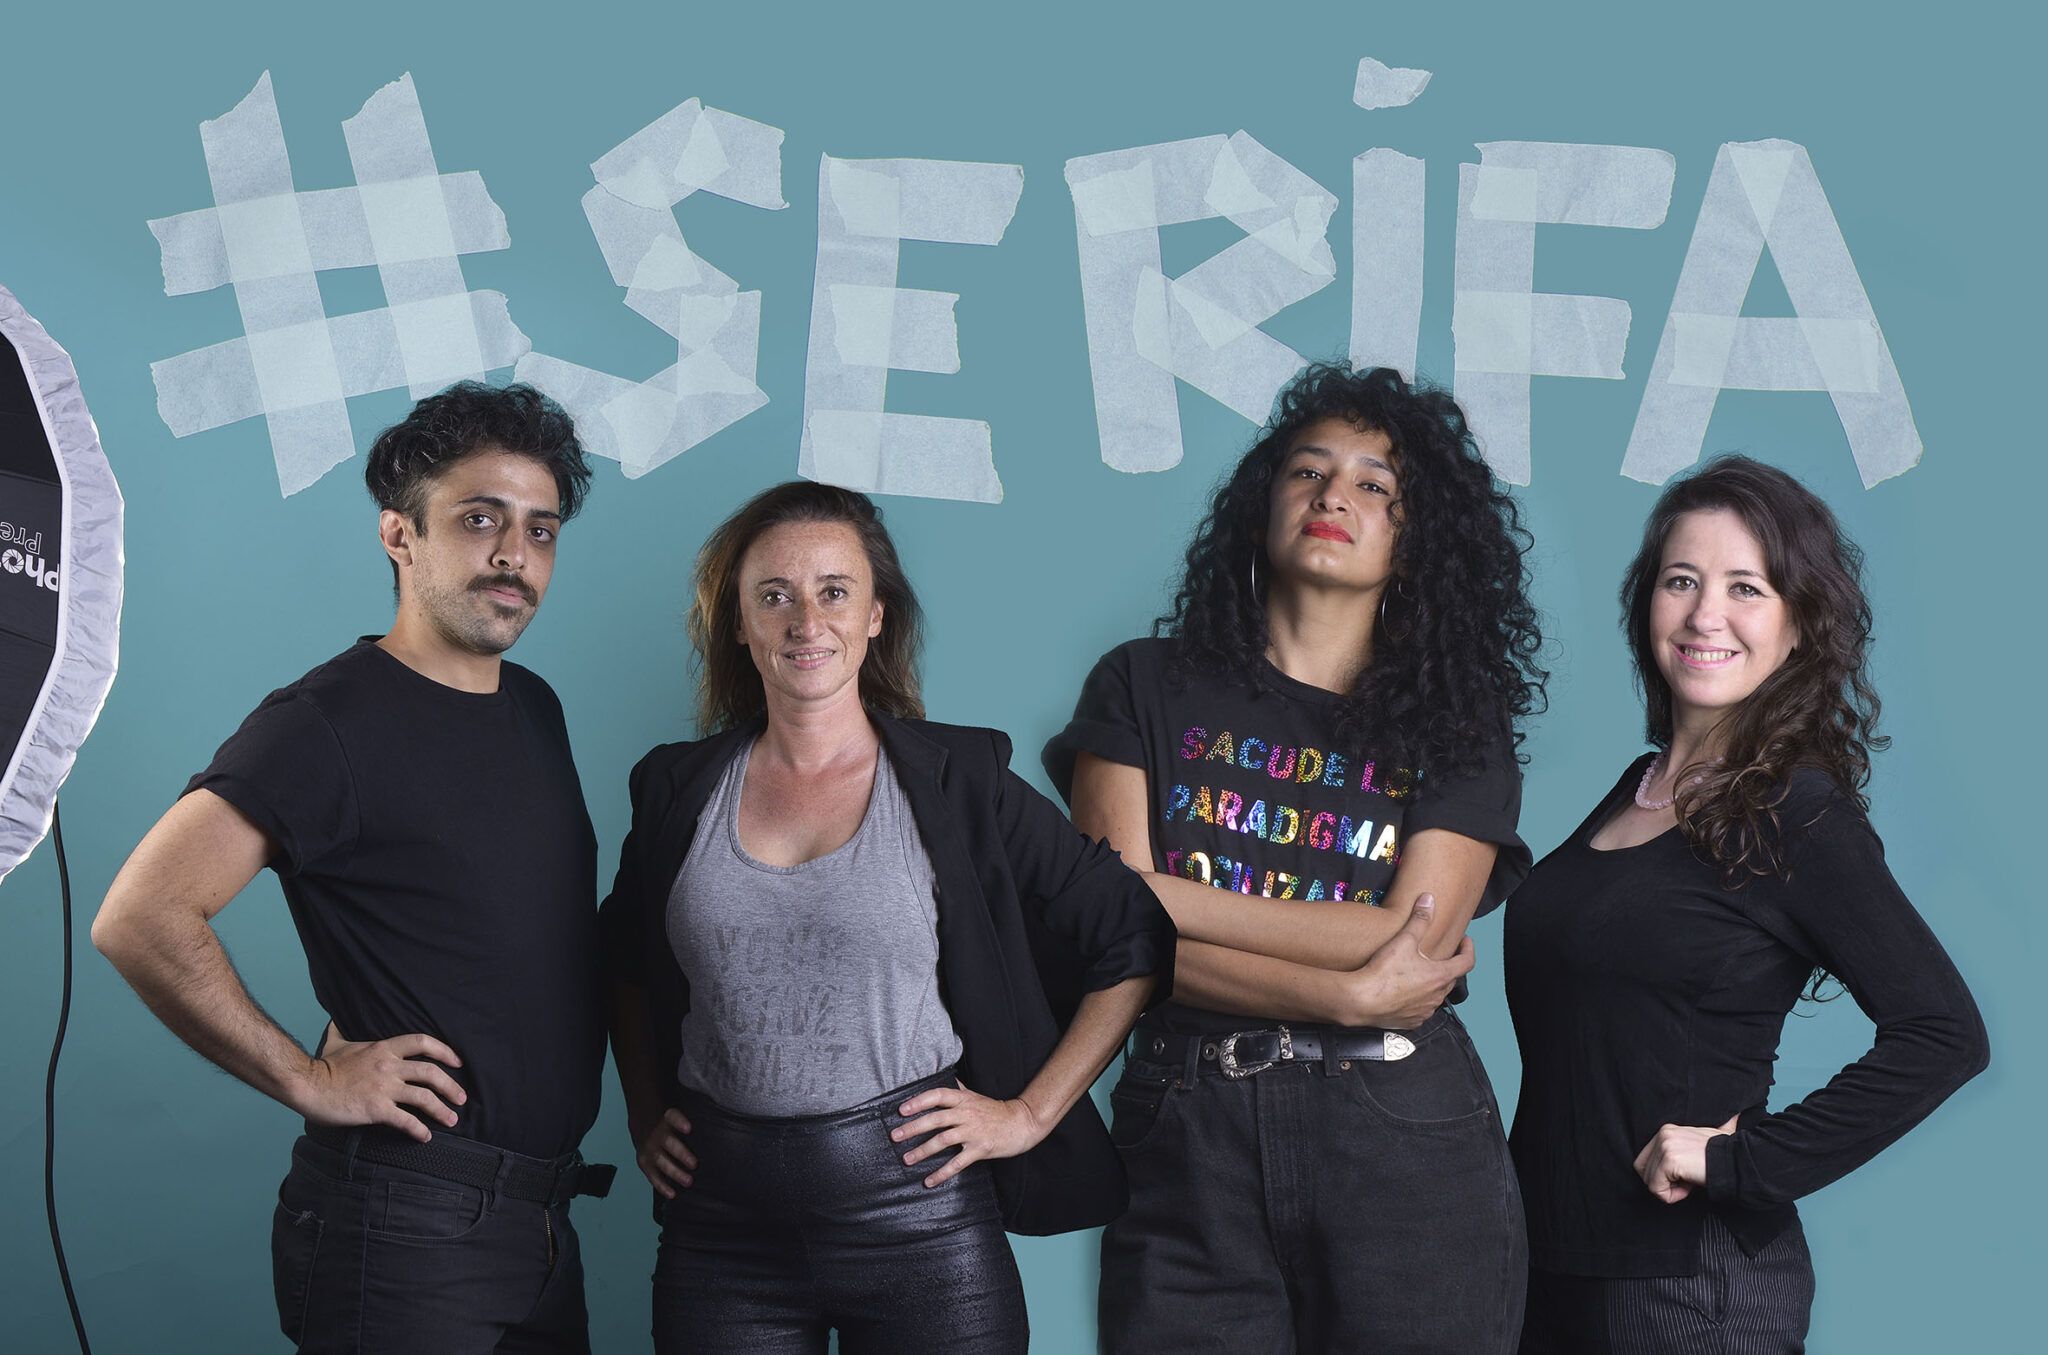 Artistas visuales salteñxs integrantes de #SeRifa